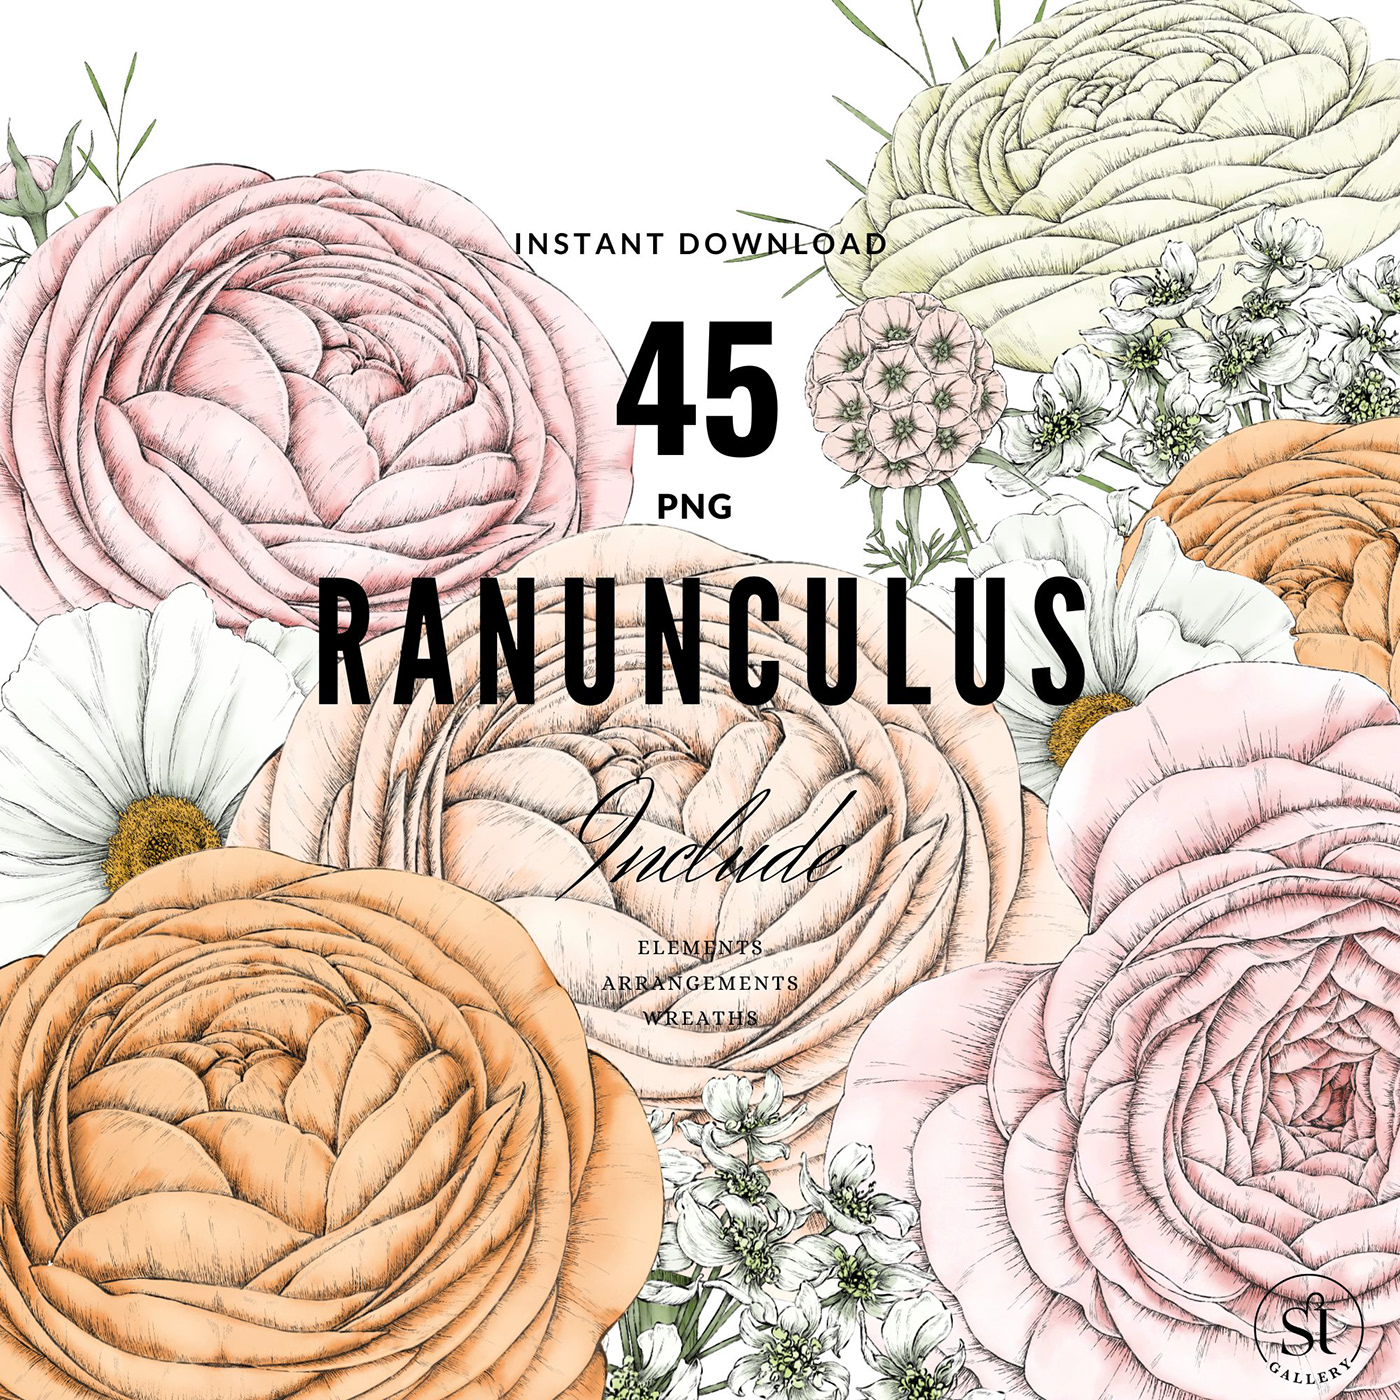 colorful pastel Digital Art  Drawing  ILLUSTRATION  Graphic Designer botanical art floral pattern surface design Ranuculus